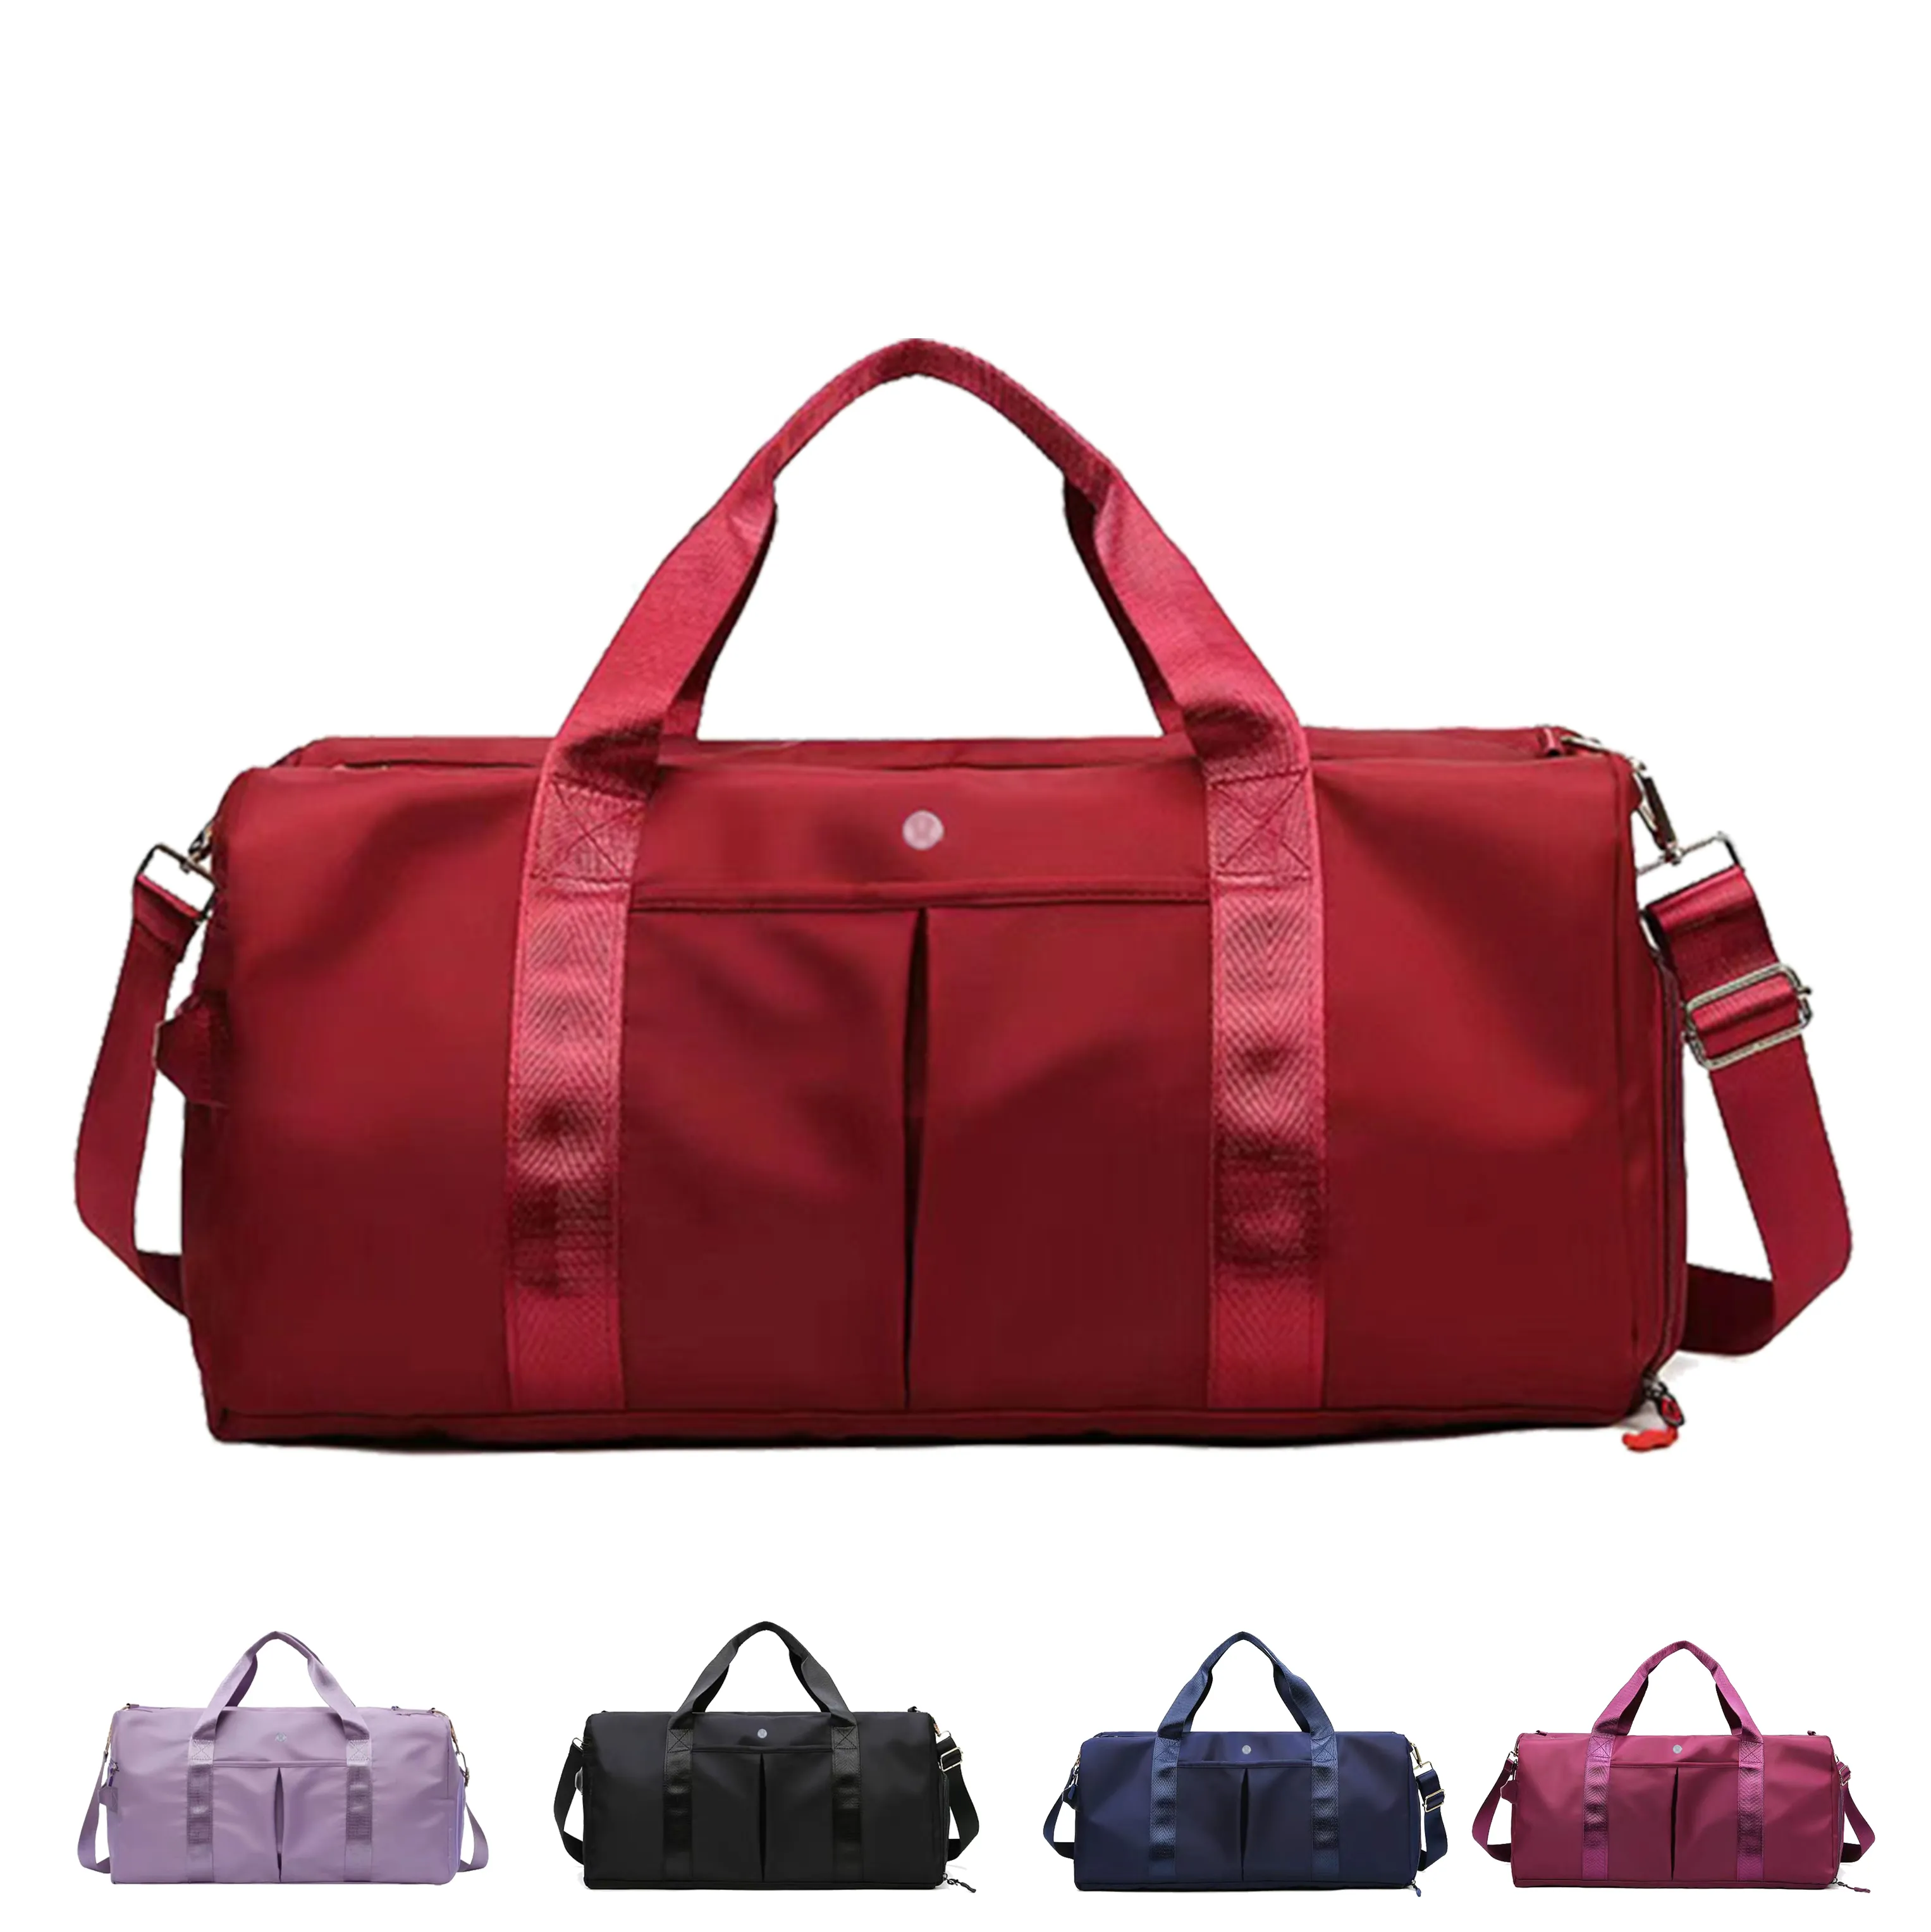 Lu nylon trucs sacs pour femmes crayons sac de voyage sac de main sacs à main pour hommes